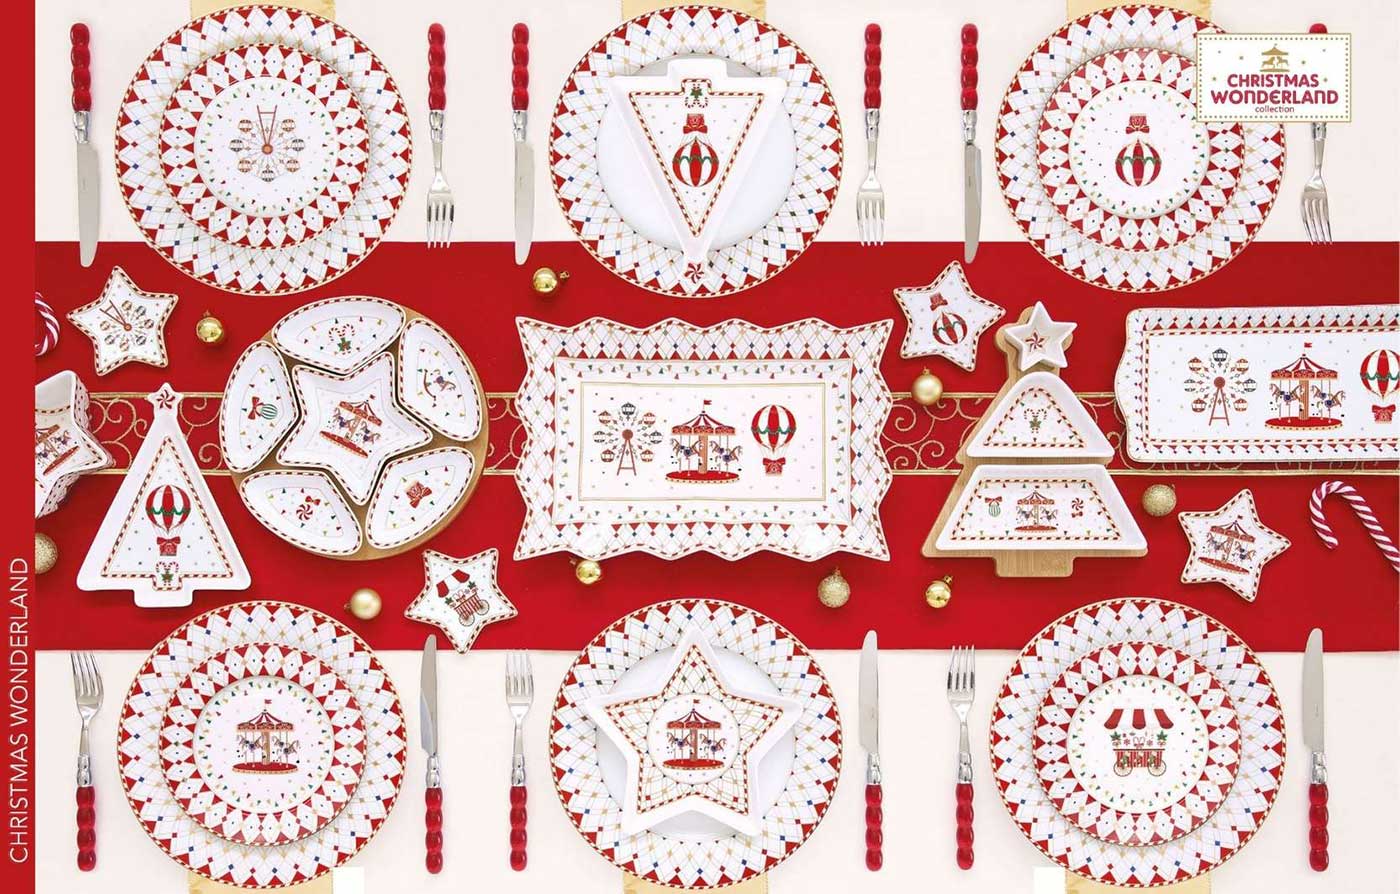 Christmas wonderland geomtrikus mintázatú karácsonyi porcelán étkészlet.